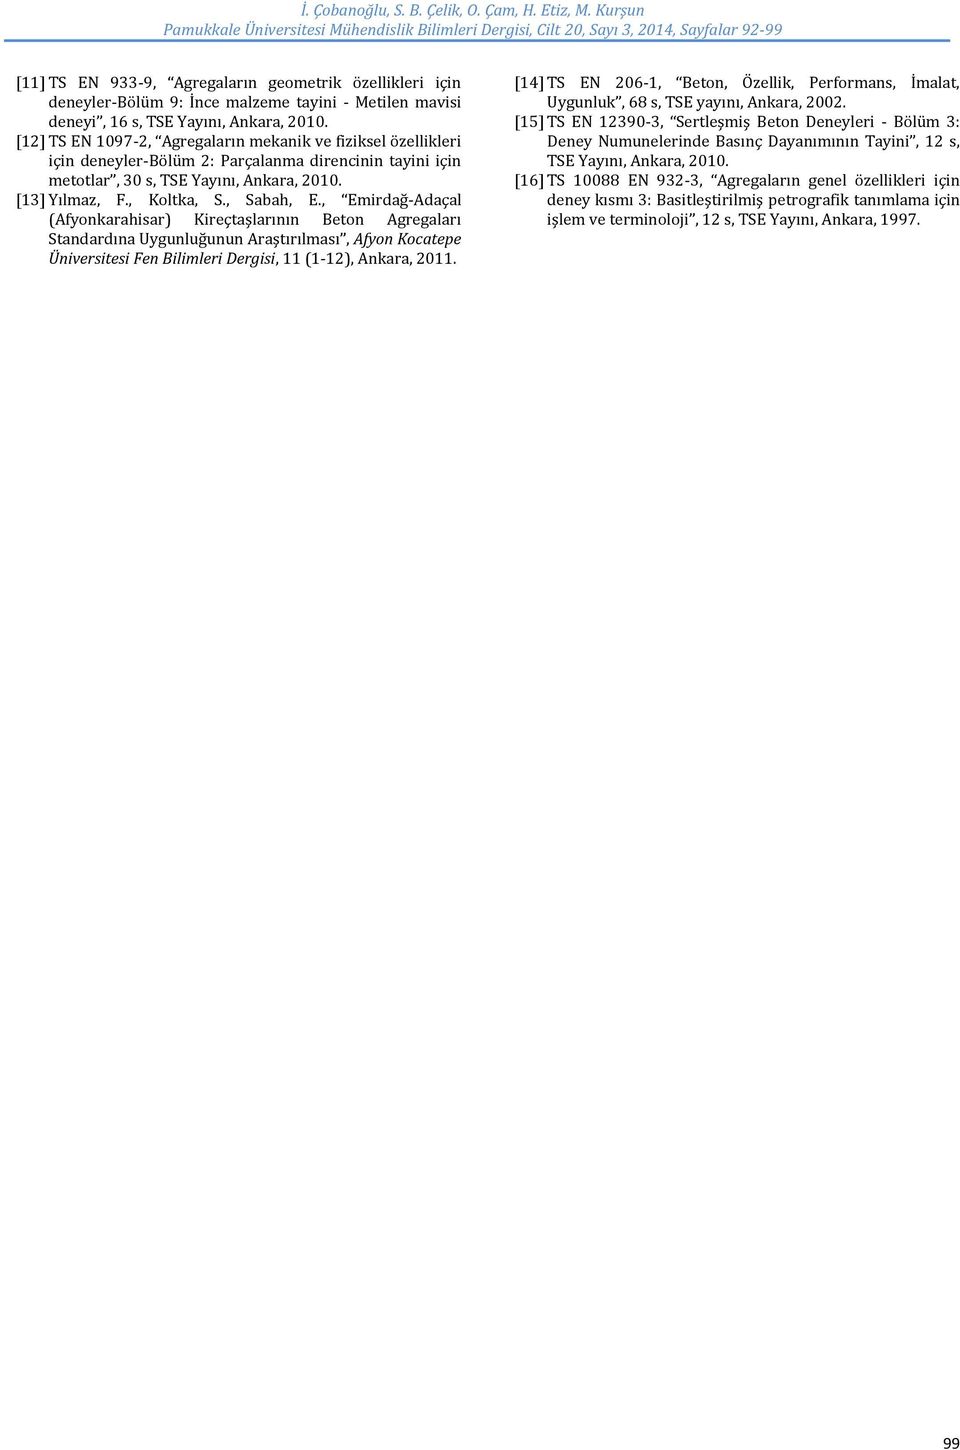 , Emirdağ-Adaçal (Afyonkarahisar) Kireçtaşlarının Beton Agregaları Standardına Uygunluğunun Araştırılması, Afyon Kocatepe Üniversitesi Fen Bilimleri Dergisi, 11 (1-12), Ankara, 2011.